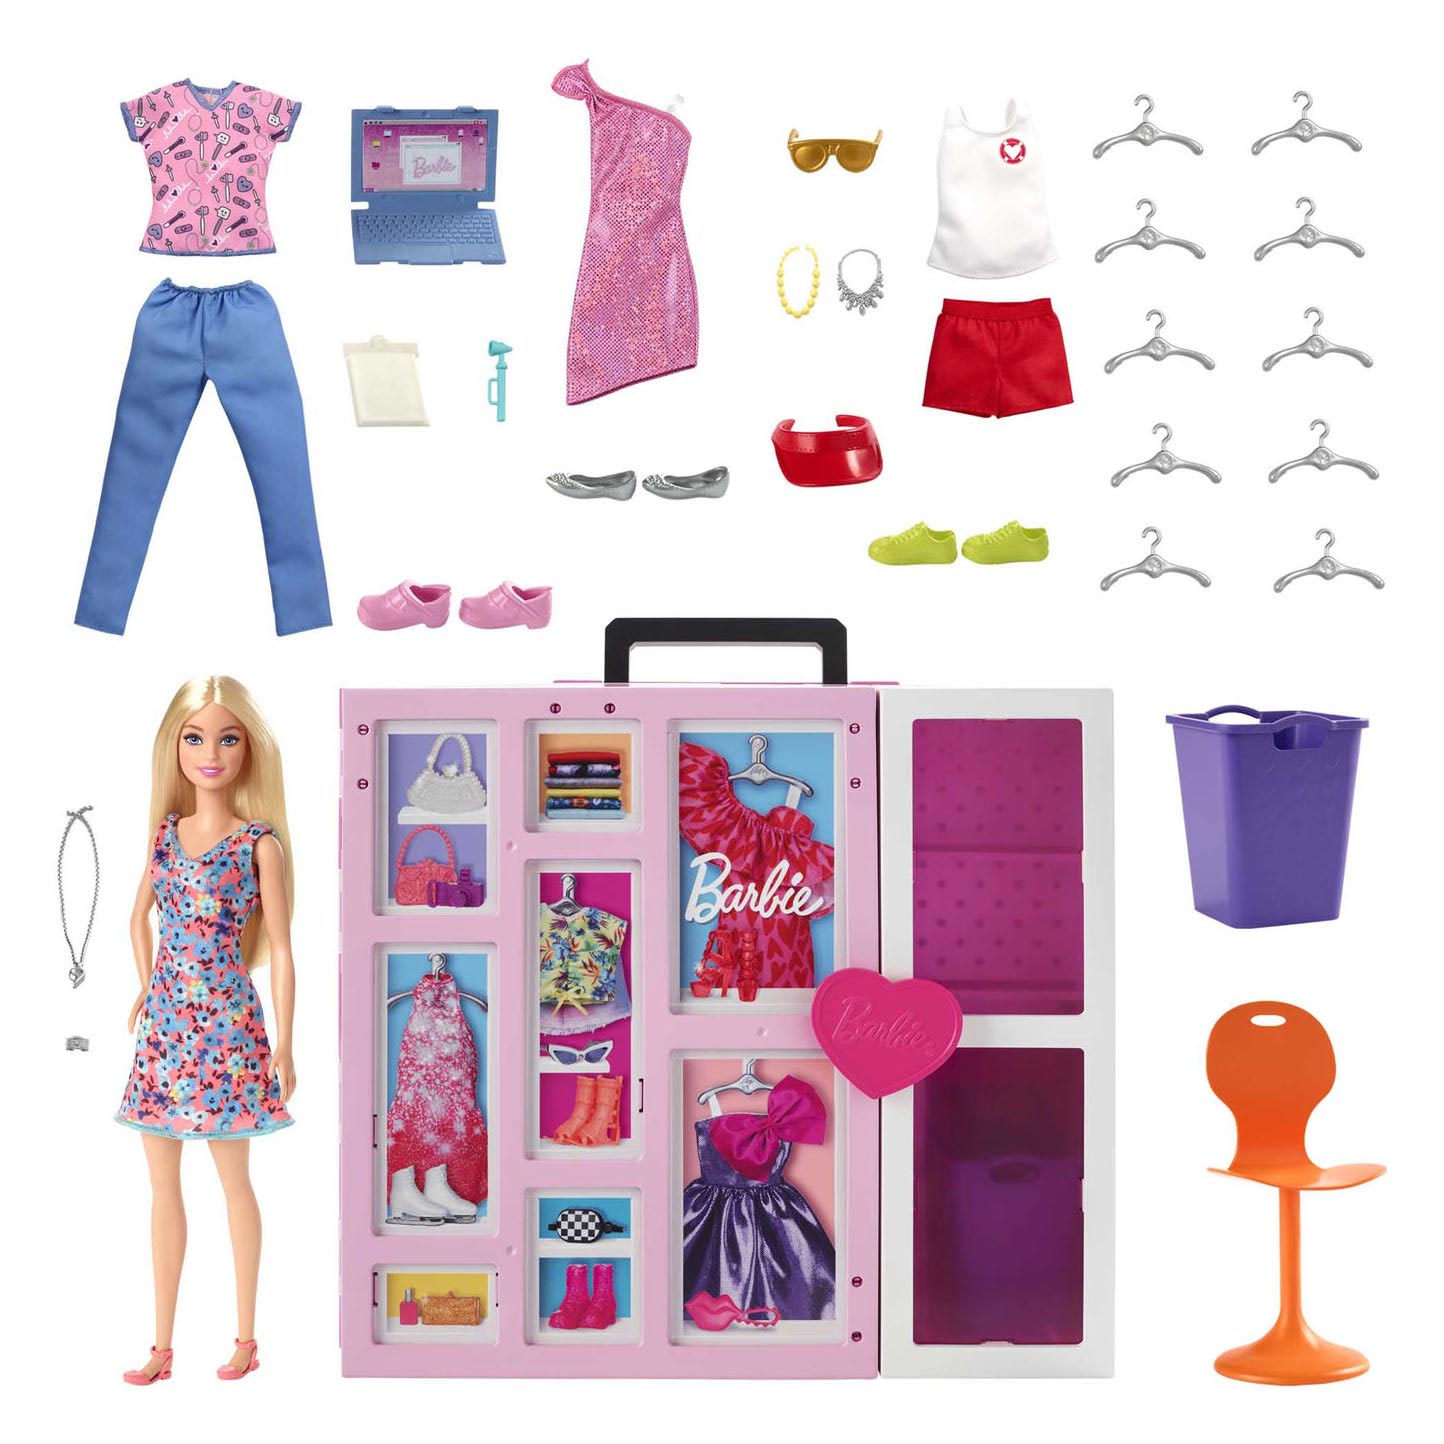 Barbie -Puppe mit Super-Garderobe